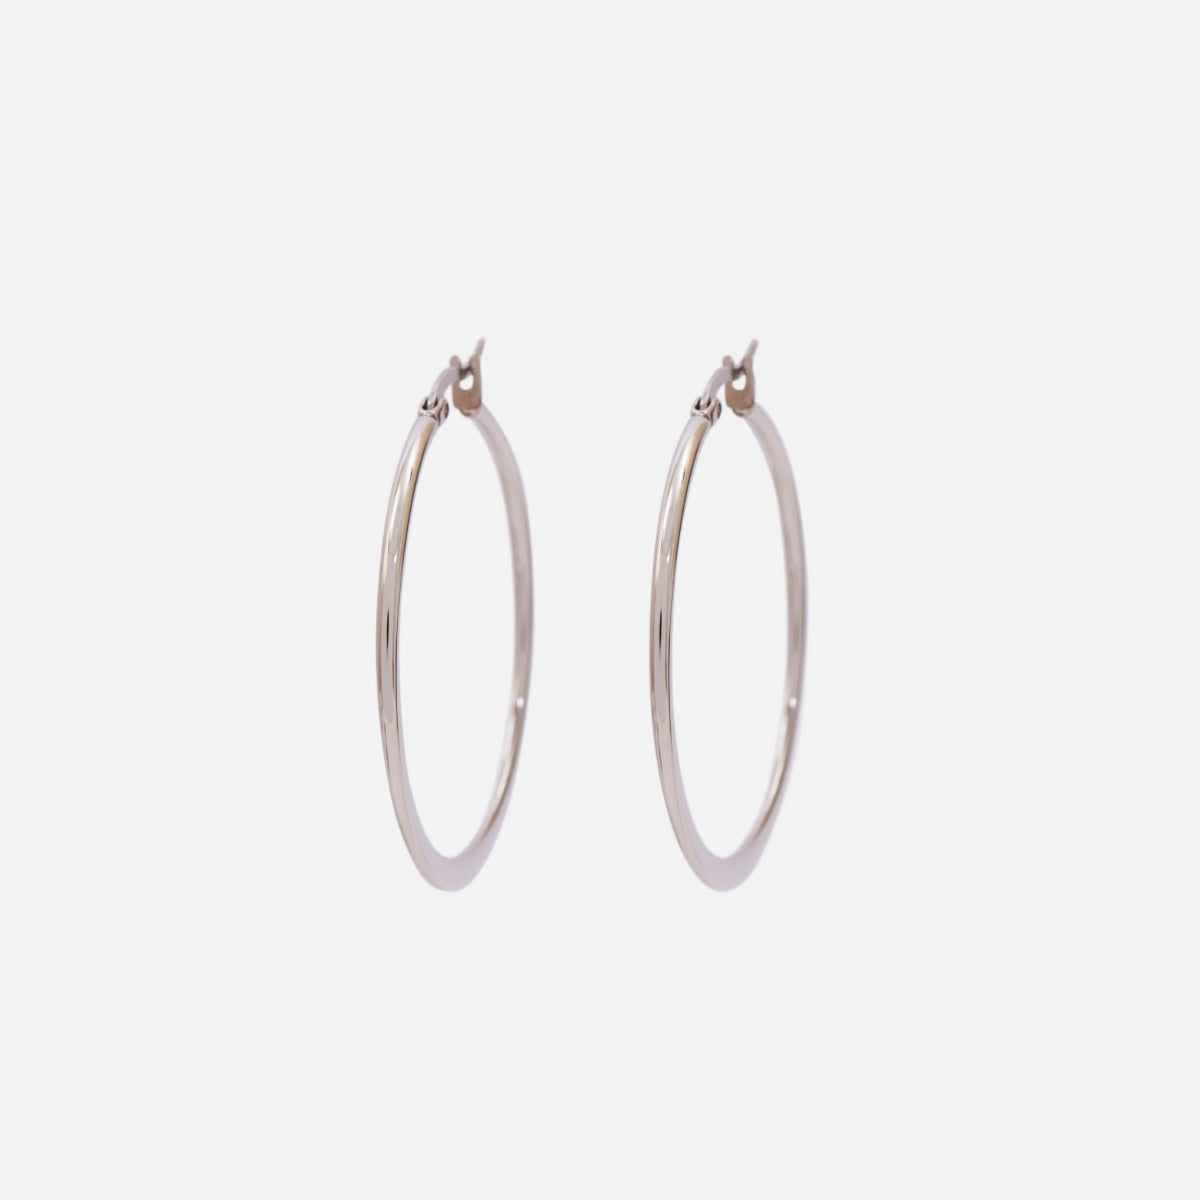 40 mm stainless steel hoop silver earrings